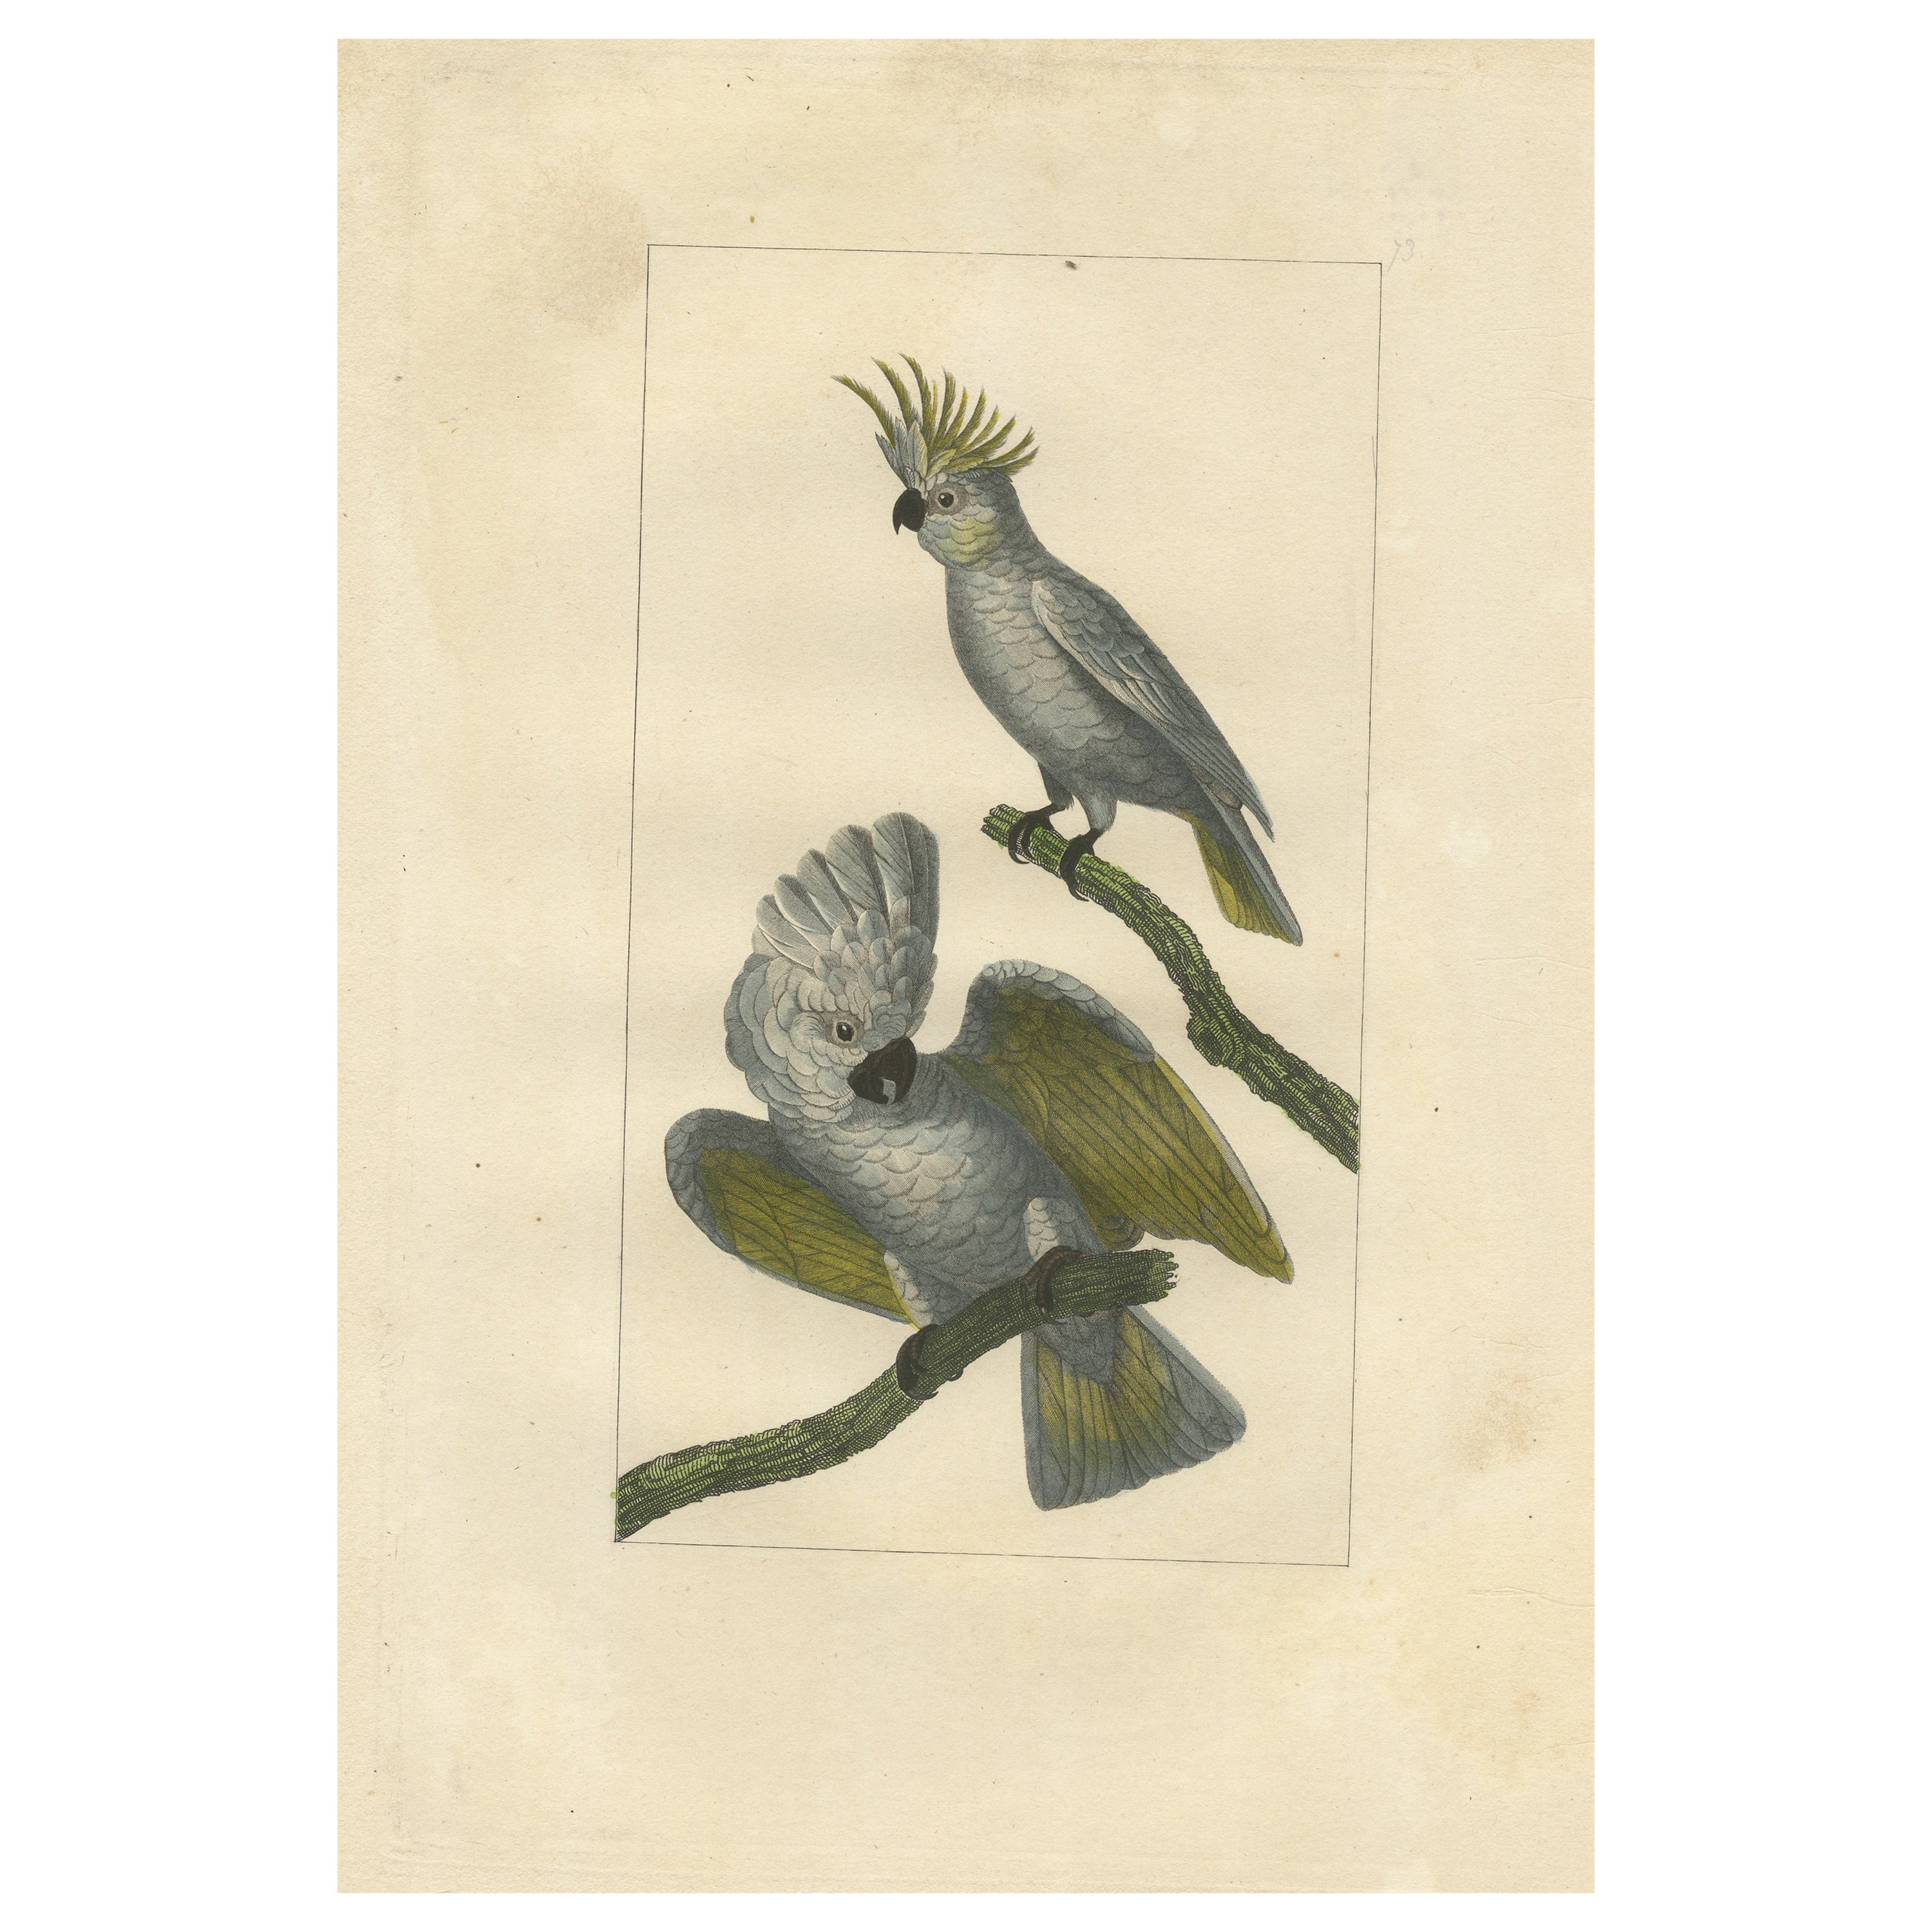 Handkolorierter antiker Vogeldruck von Cockatoos